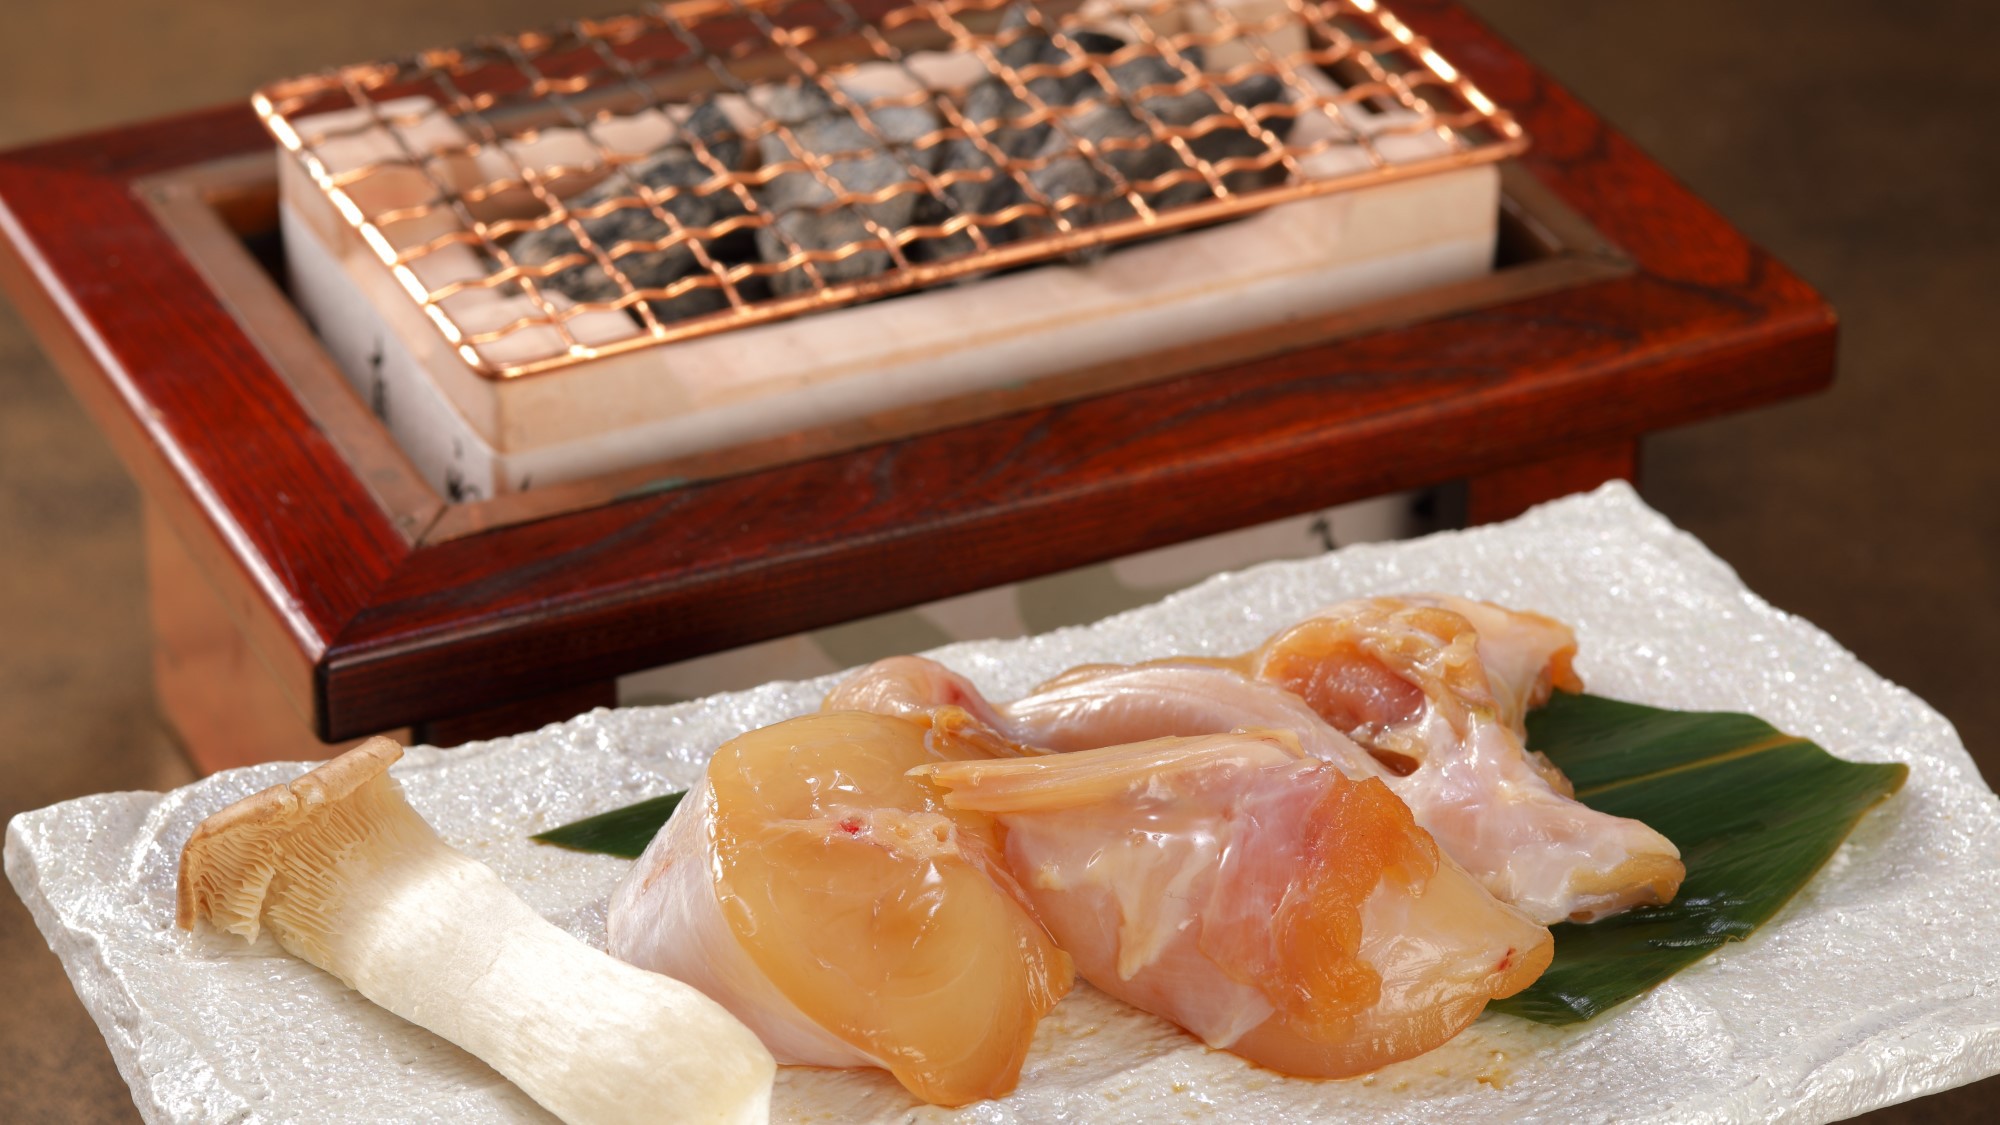 【とらふぐ魚醤焼】知多半島の郷土料理。魚醤に付け込んだふぐは、炭火で焼くことで濃厚な味わいに。